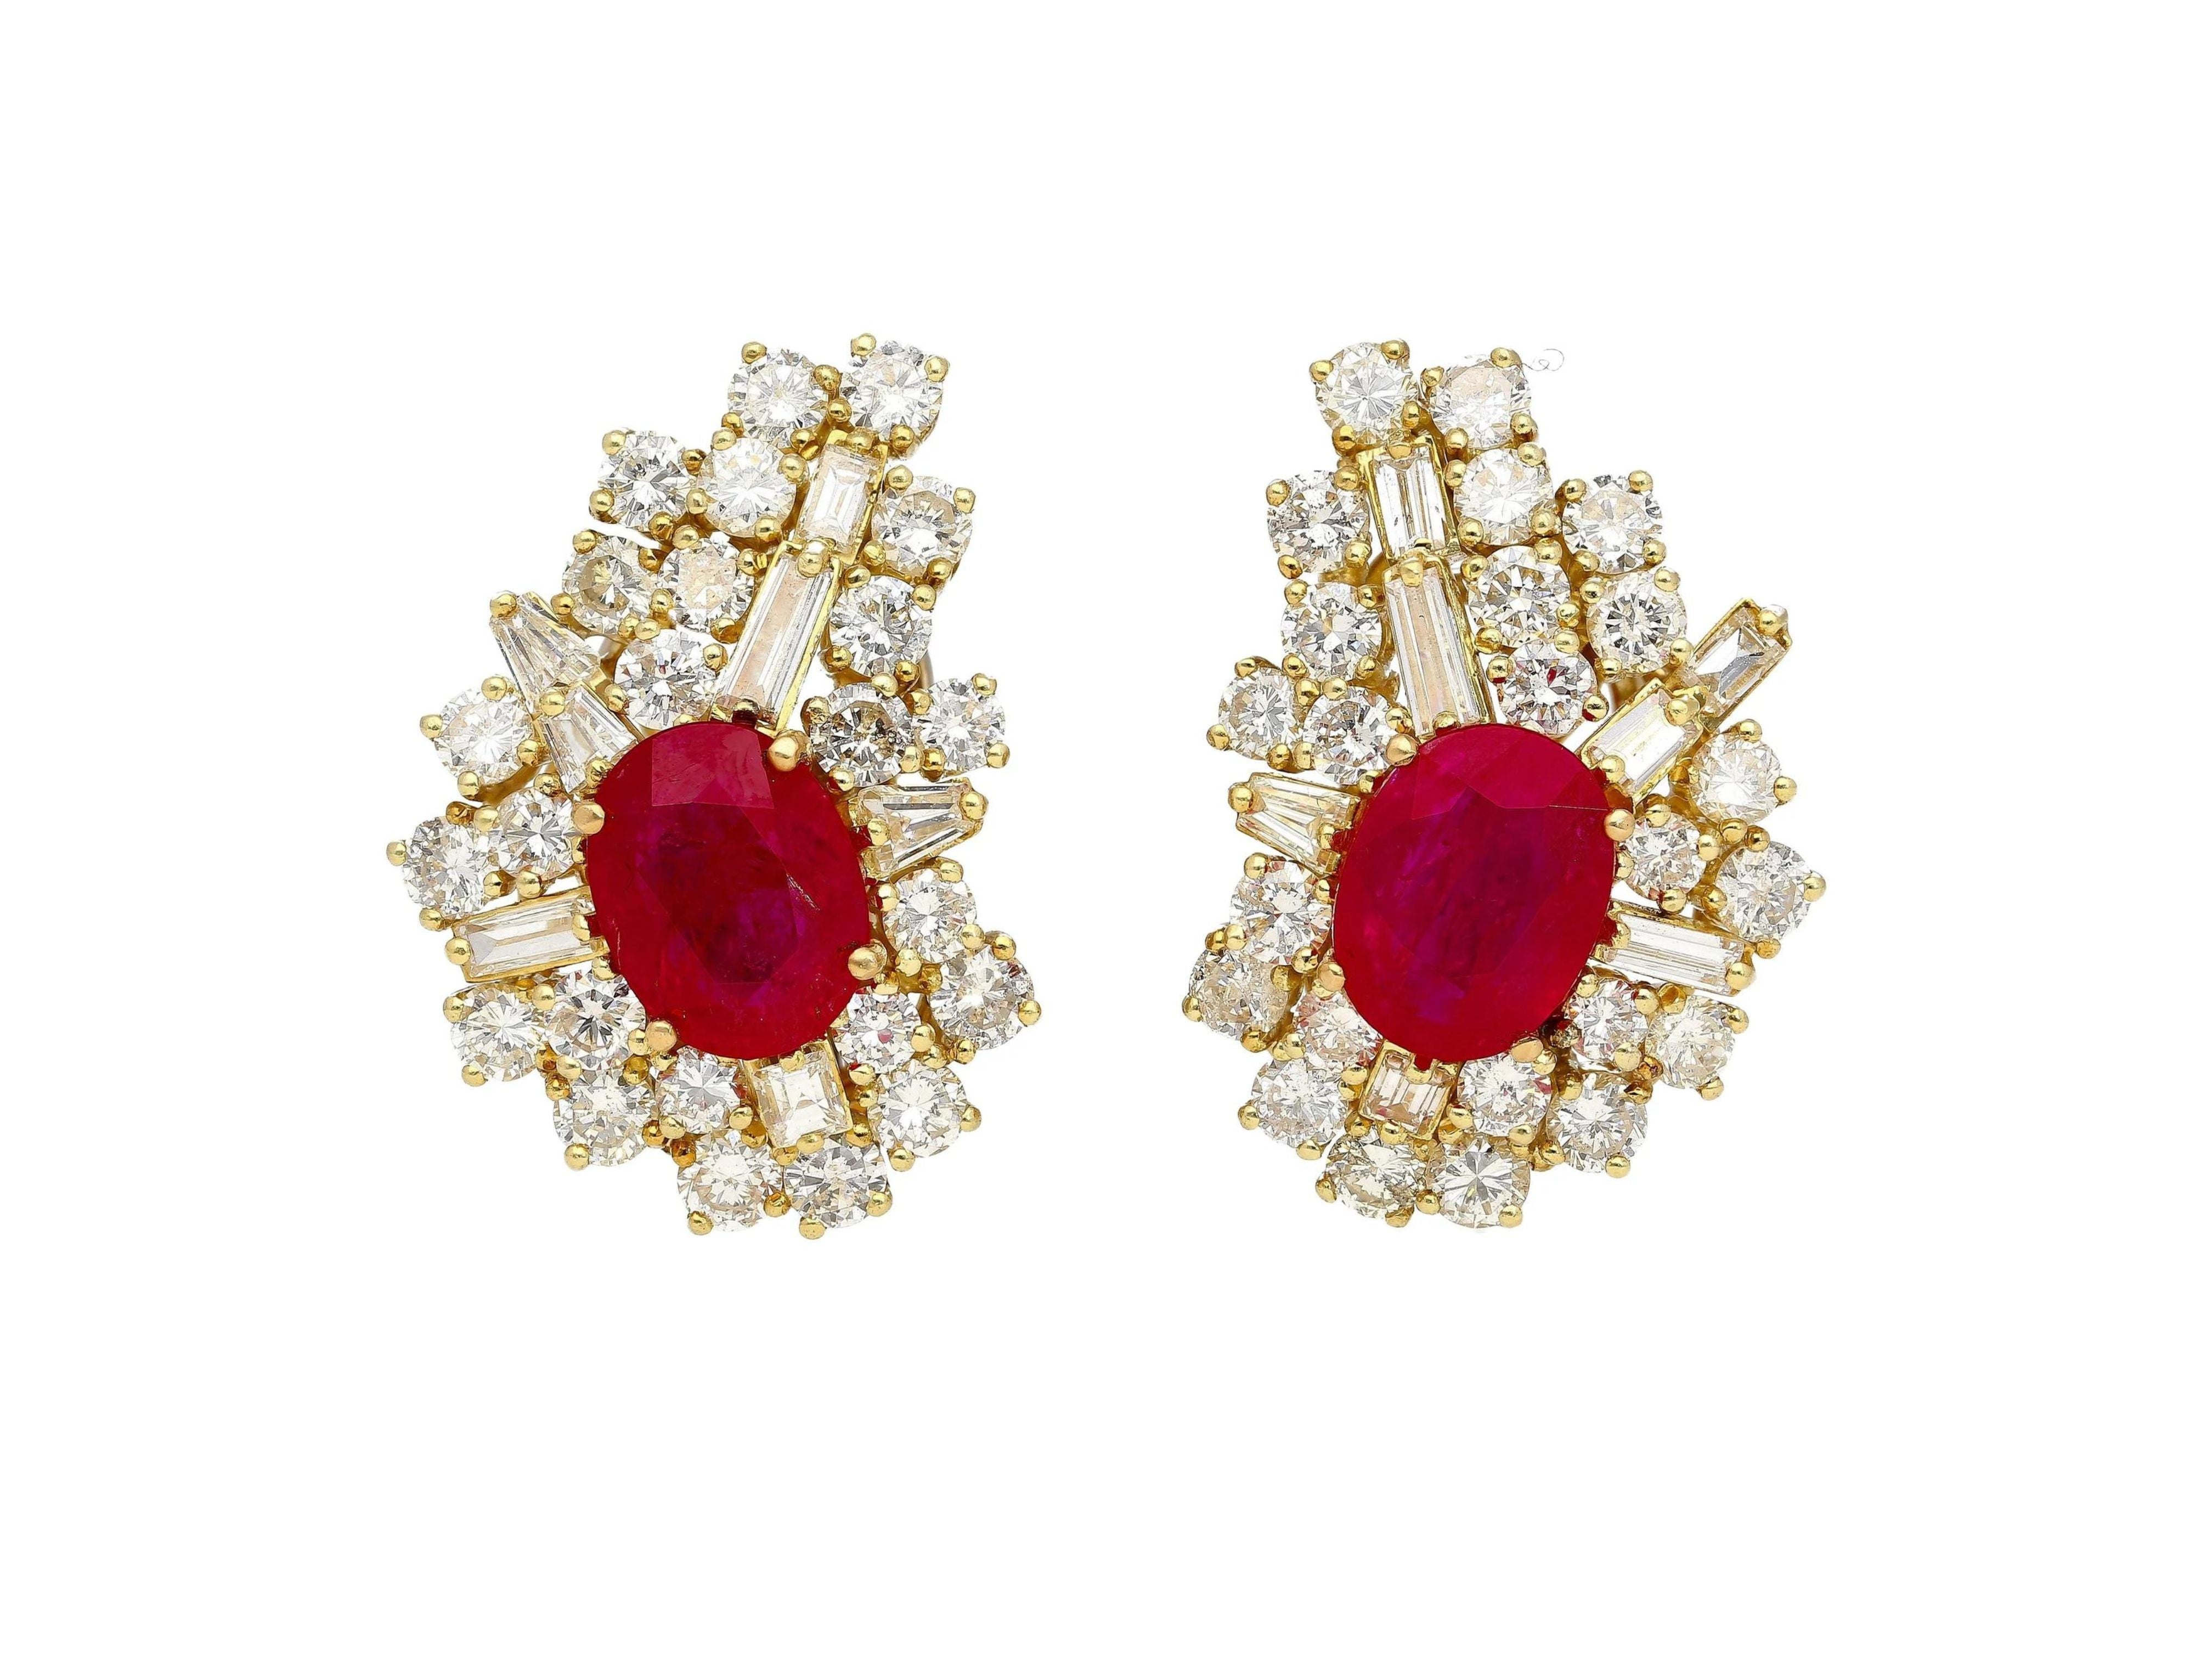 Vintage 4.5 Carat Ruby & Diamond Cluster Clip On Earrings in 18K Yellow Gold-Earrings-ASSAY